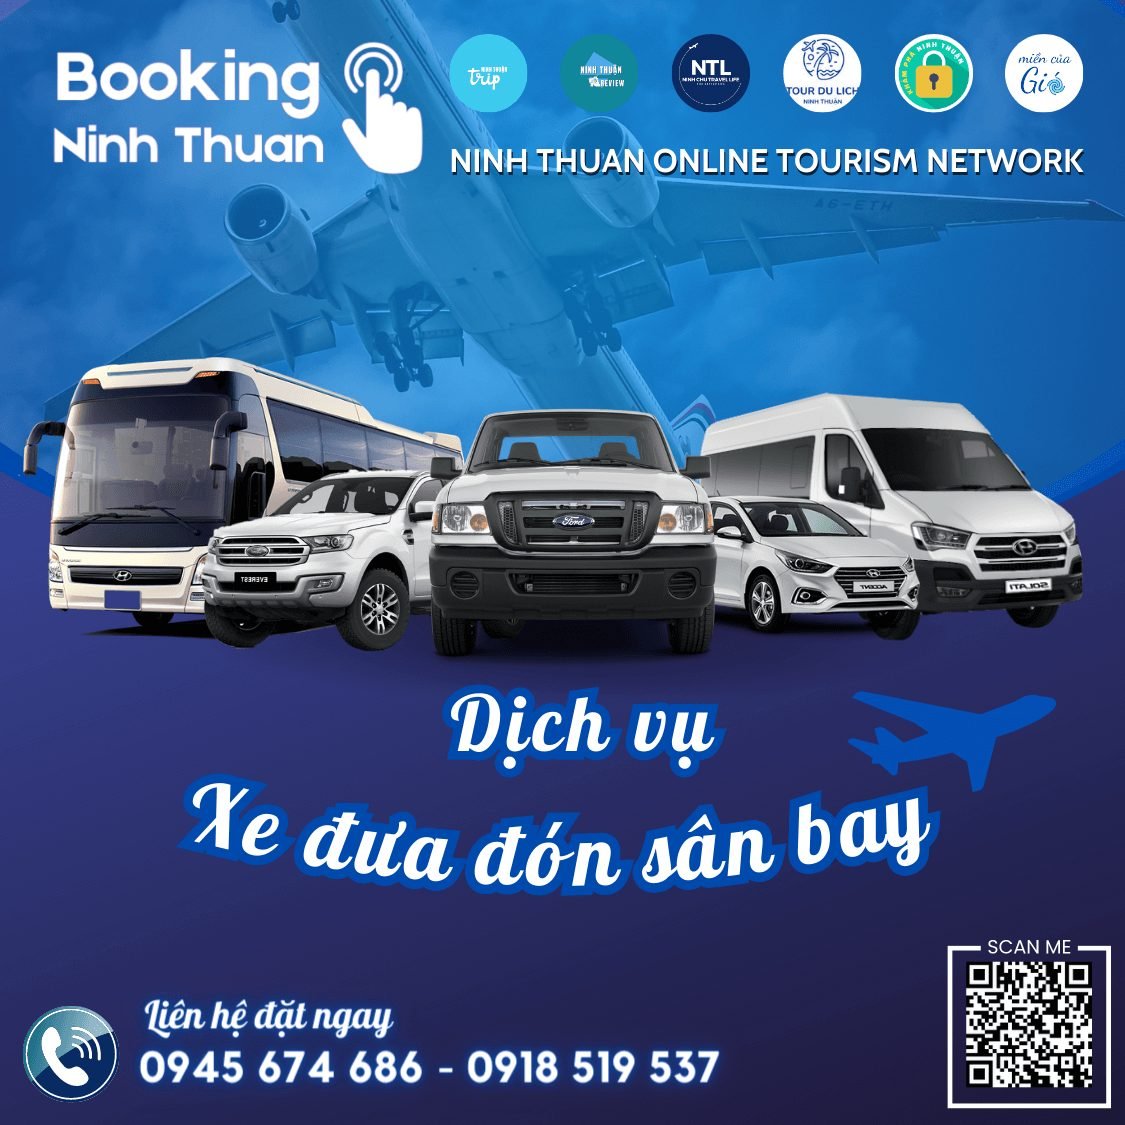 Tourdulichninhthuan.vn cung cấp dịch vụ xe đưa đón sân bay về Ninh Thuận với chất lượng và giá tốt nhất thị trường